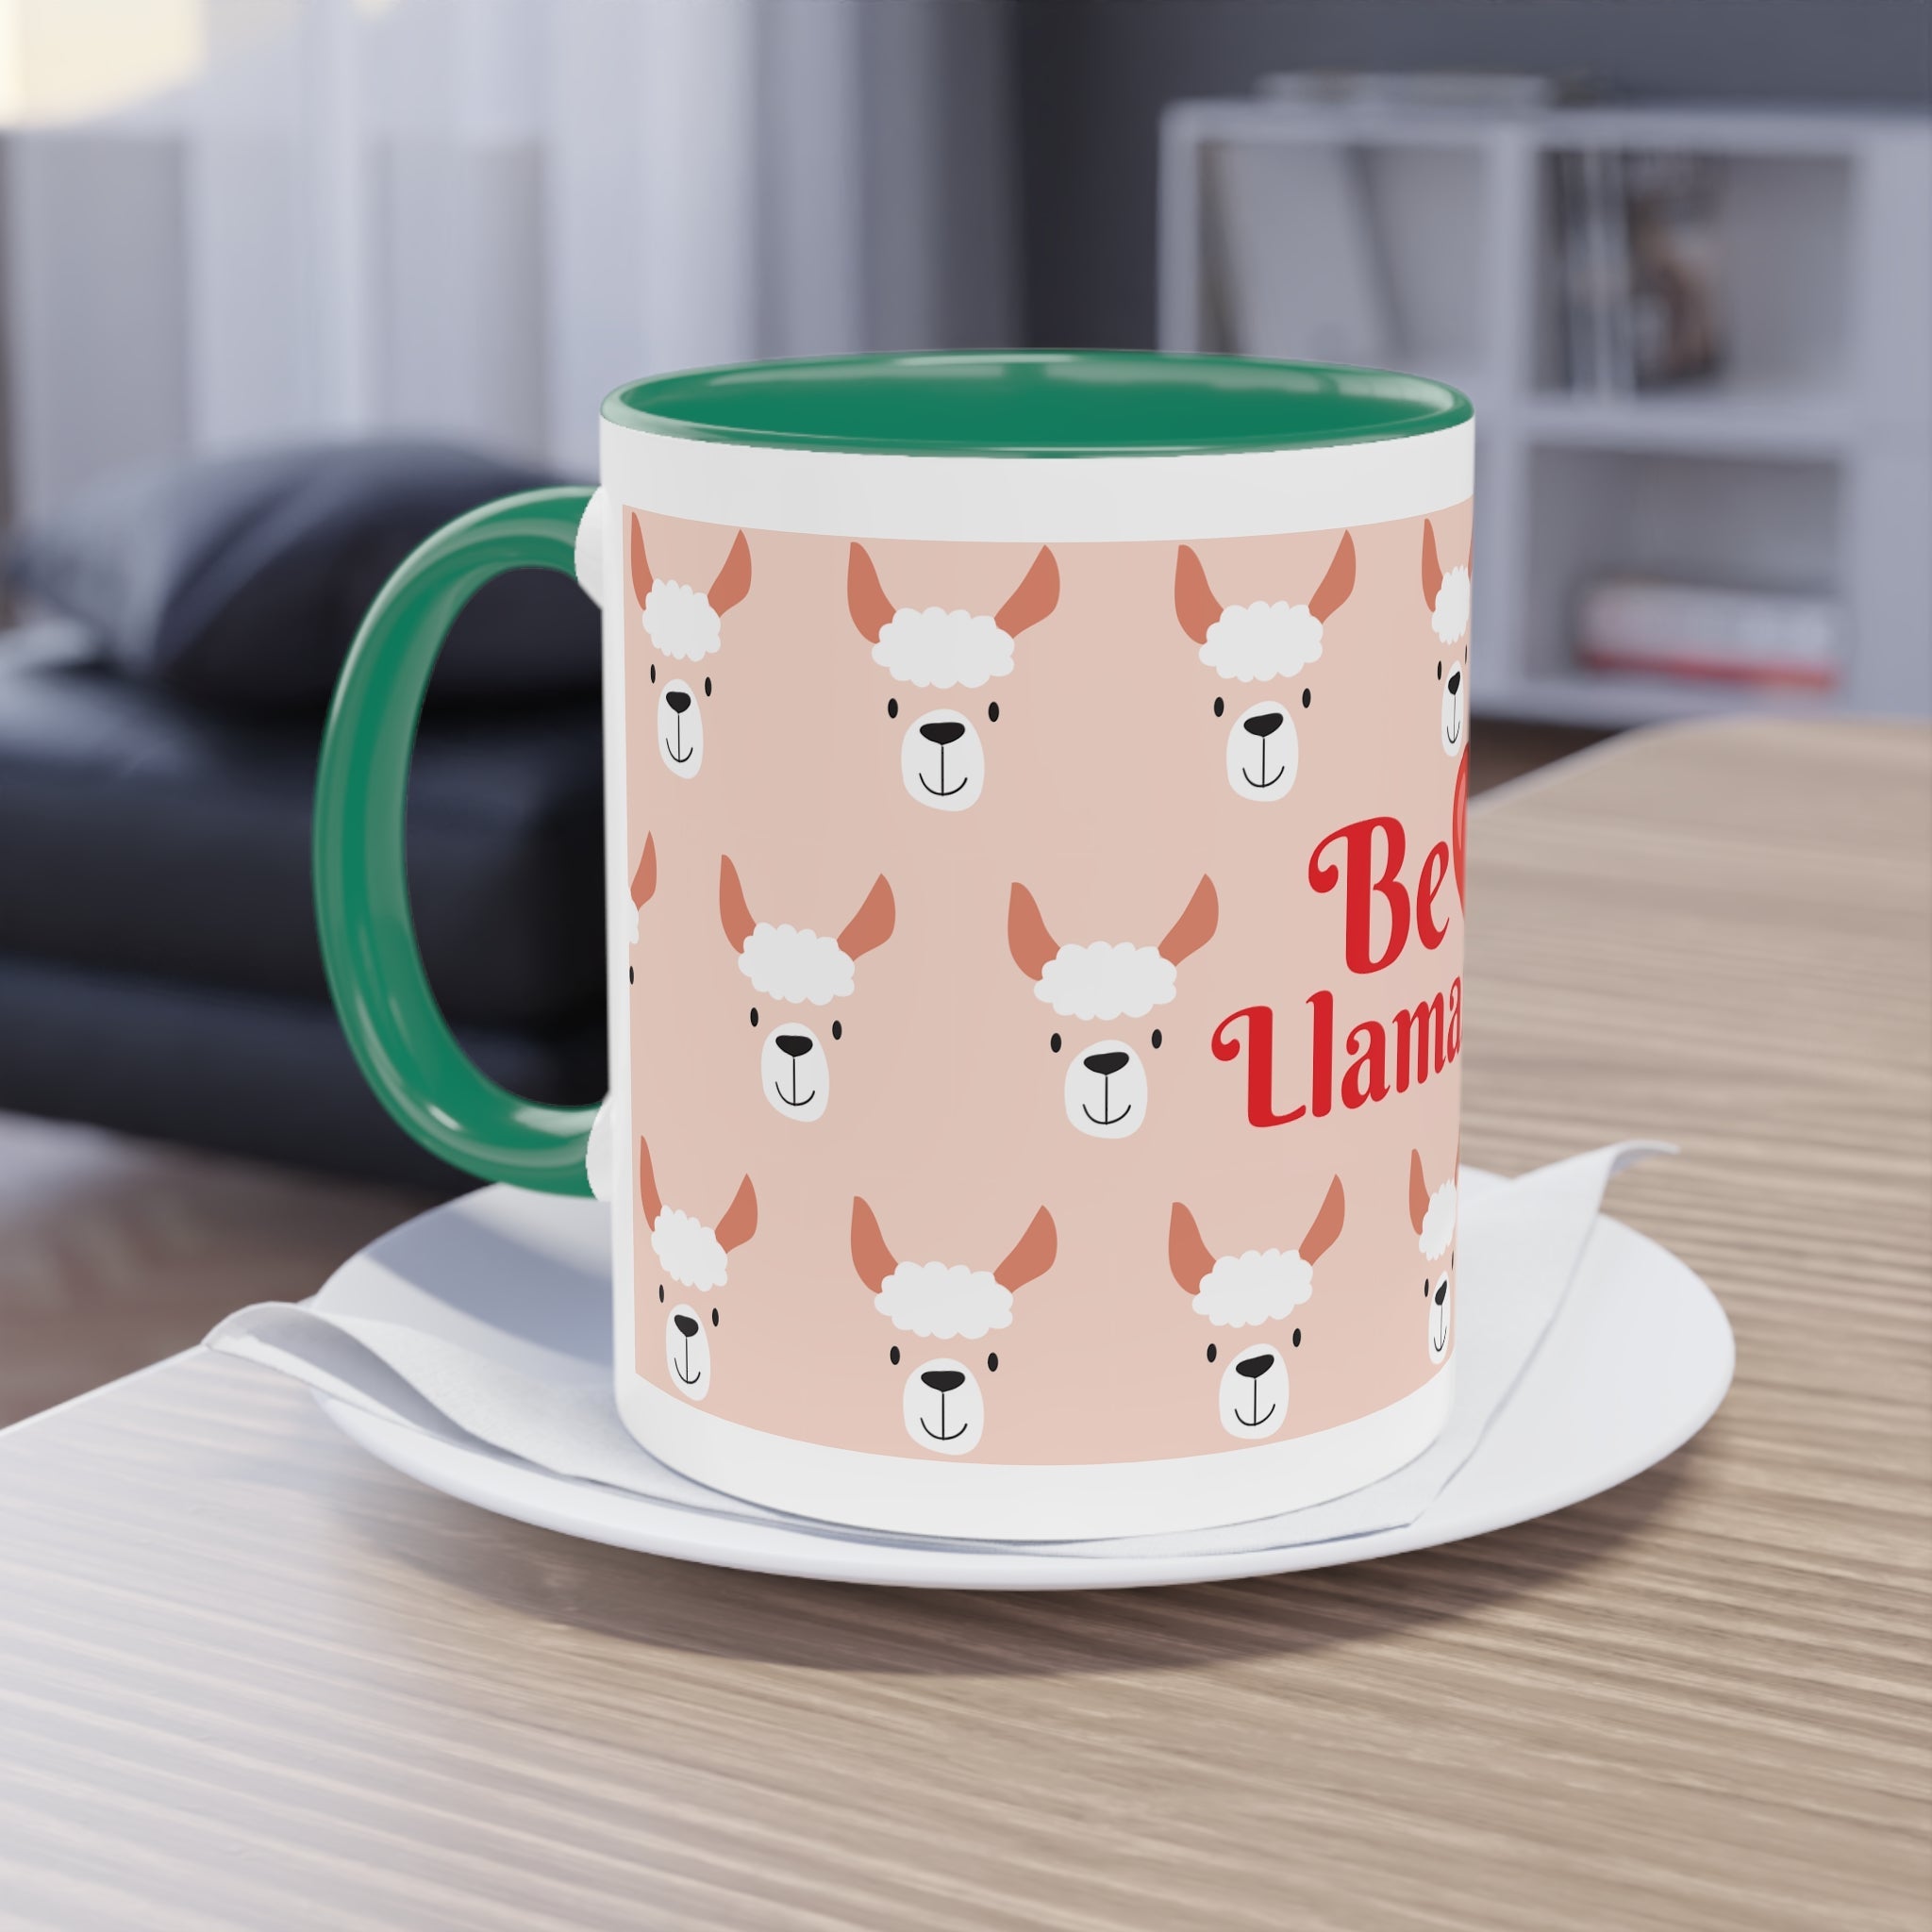 Two-Tone Coffee Mug, 11oz-64